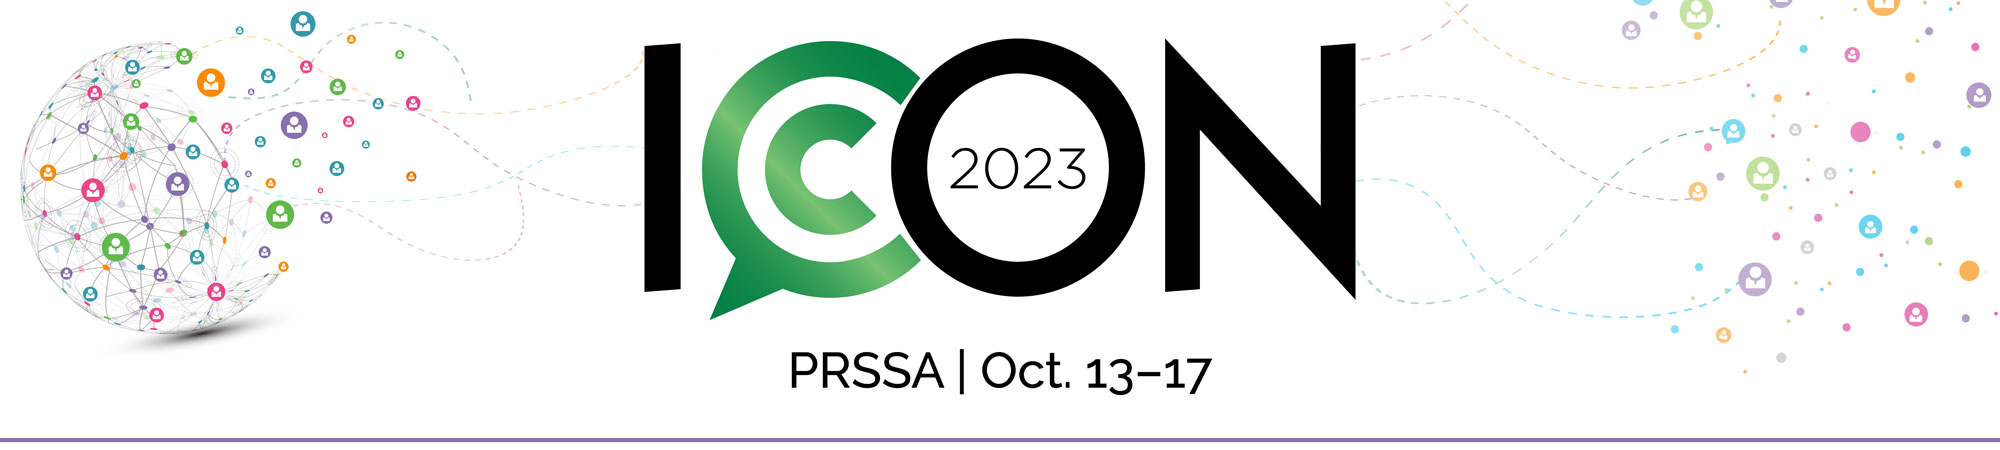 ICON 2023 PRSA Conference